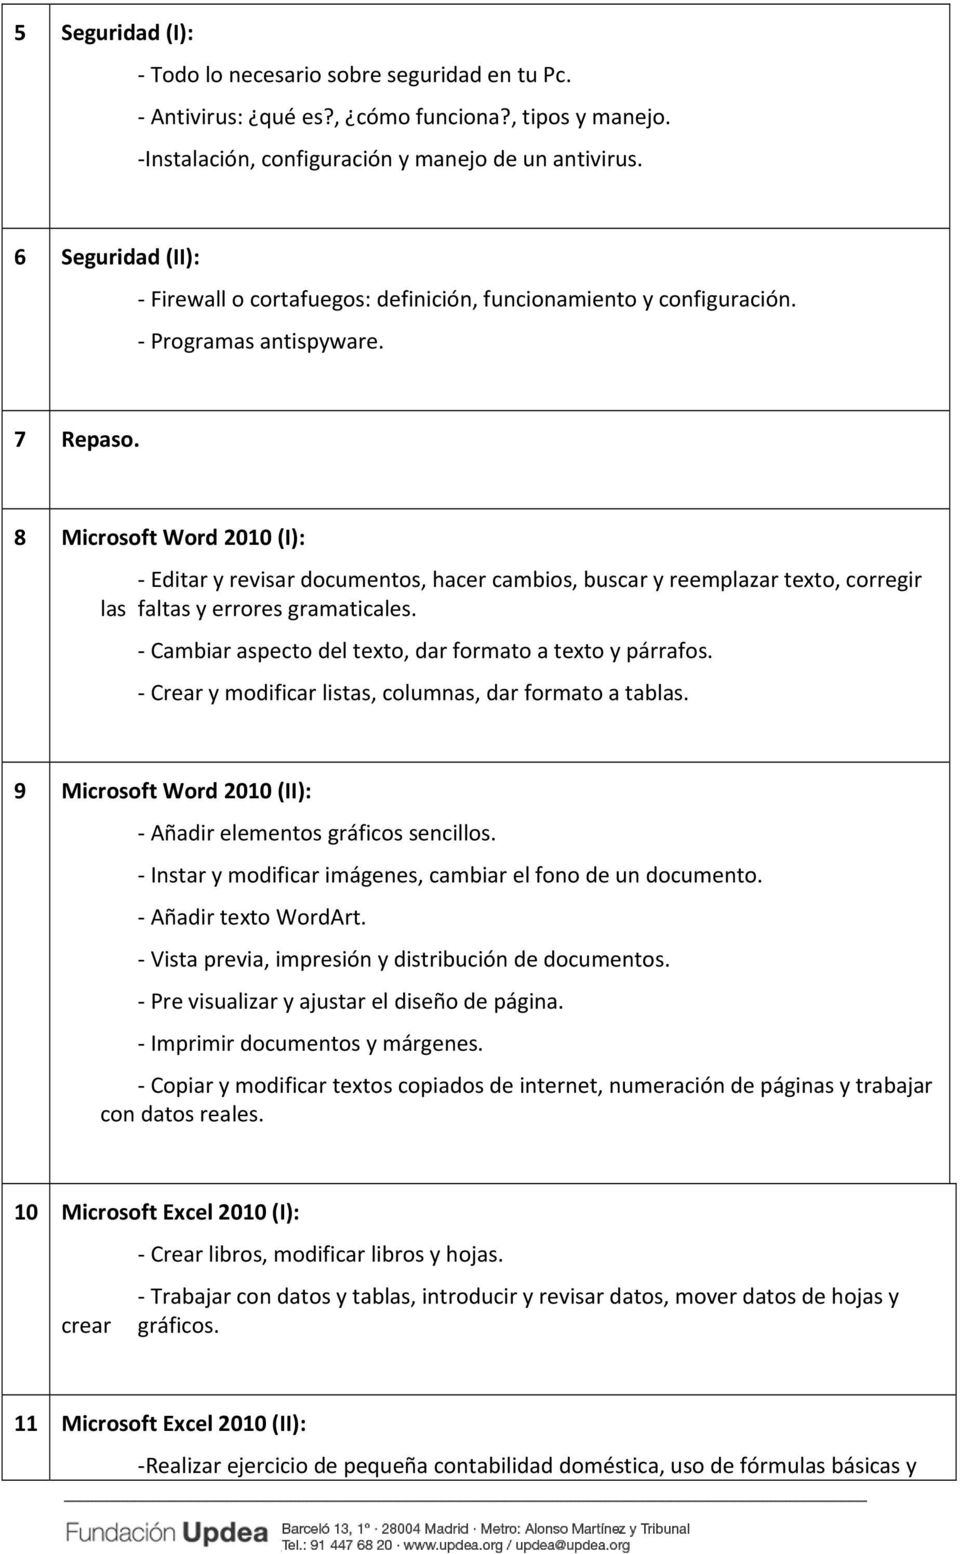 8 Microsoft Word 2010 (I): Editar y revisar documentos, hacer cambios, buscar y reemplazar texto, corregir las faltas y errores gramaticales. Cambiar aspecto del texto, dar formato a texto y párrafos.